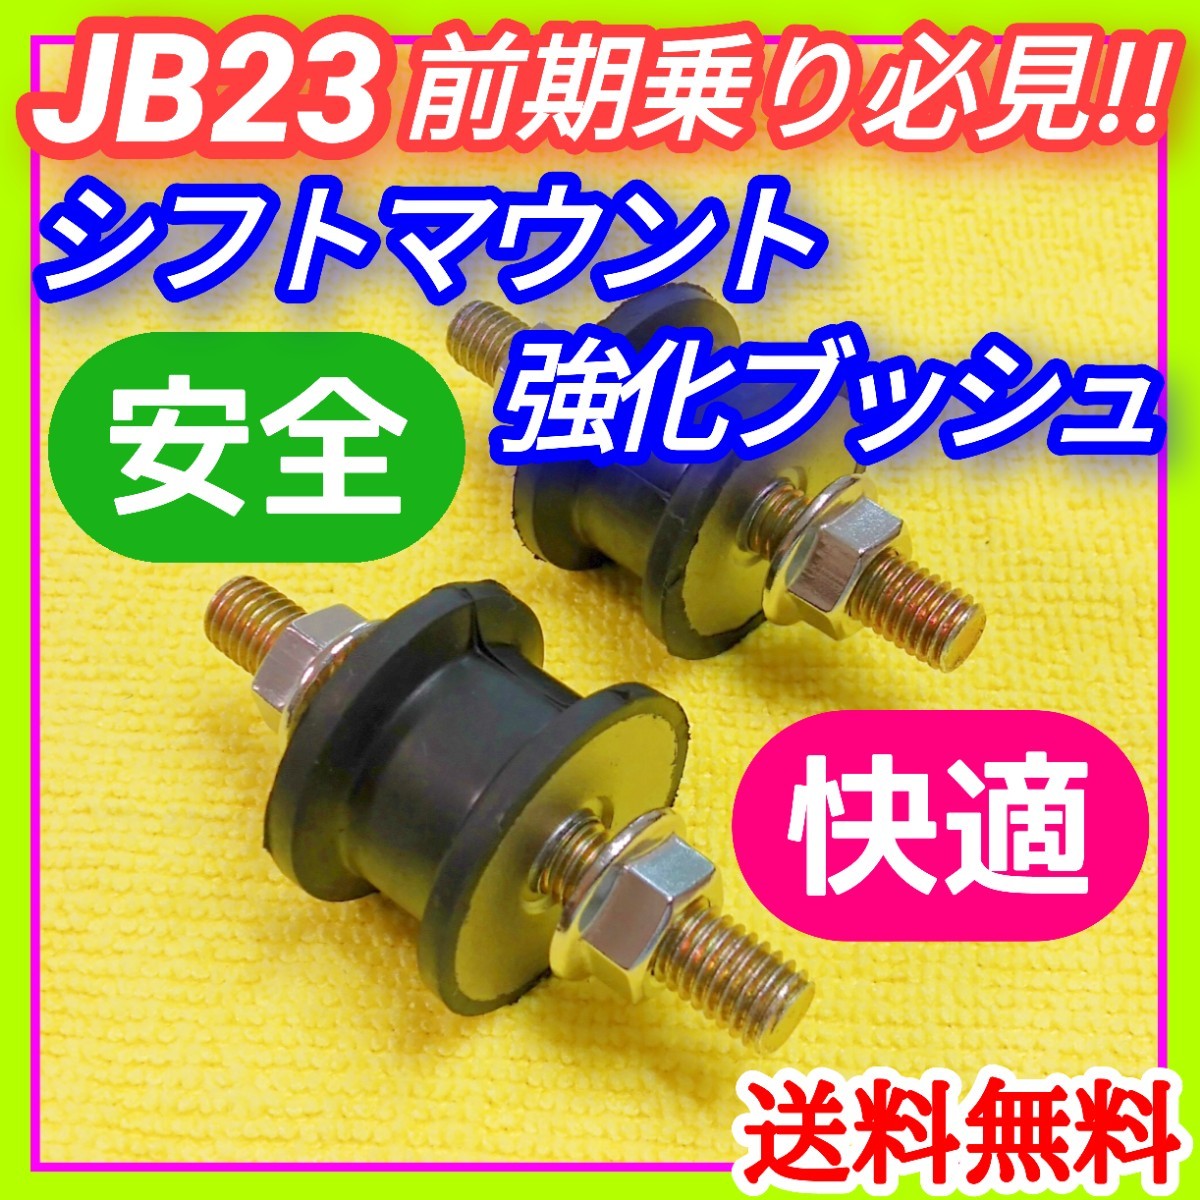  Suzuki JB23W Jimny 1 type -4 type до. предыдущий период механическая трансмиссия автомобильный коробка передач крепление усиленный втулка нержавеющая сталь гайка предотвращение гарантия все работоспособность выше .②